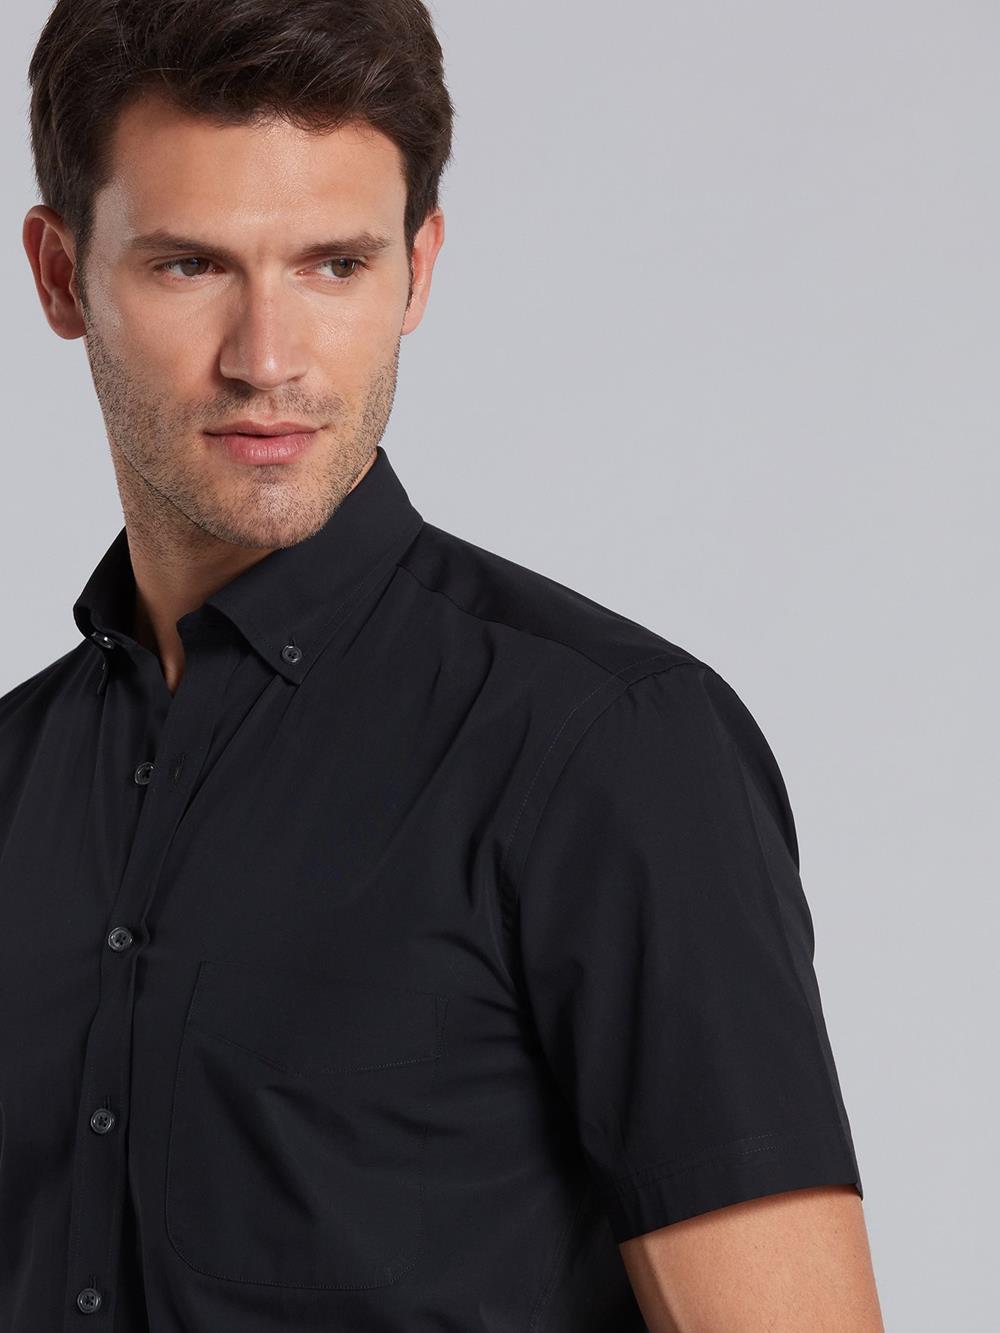 Black poplin shirt - Short Sleeves